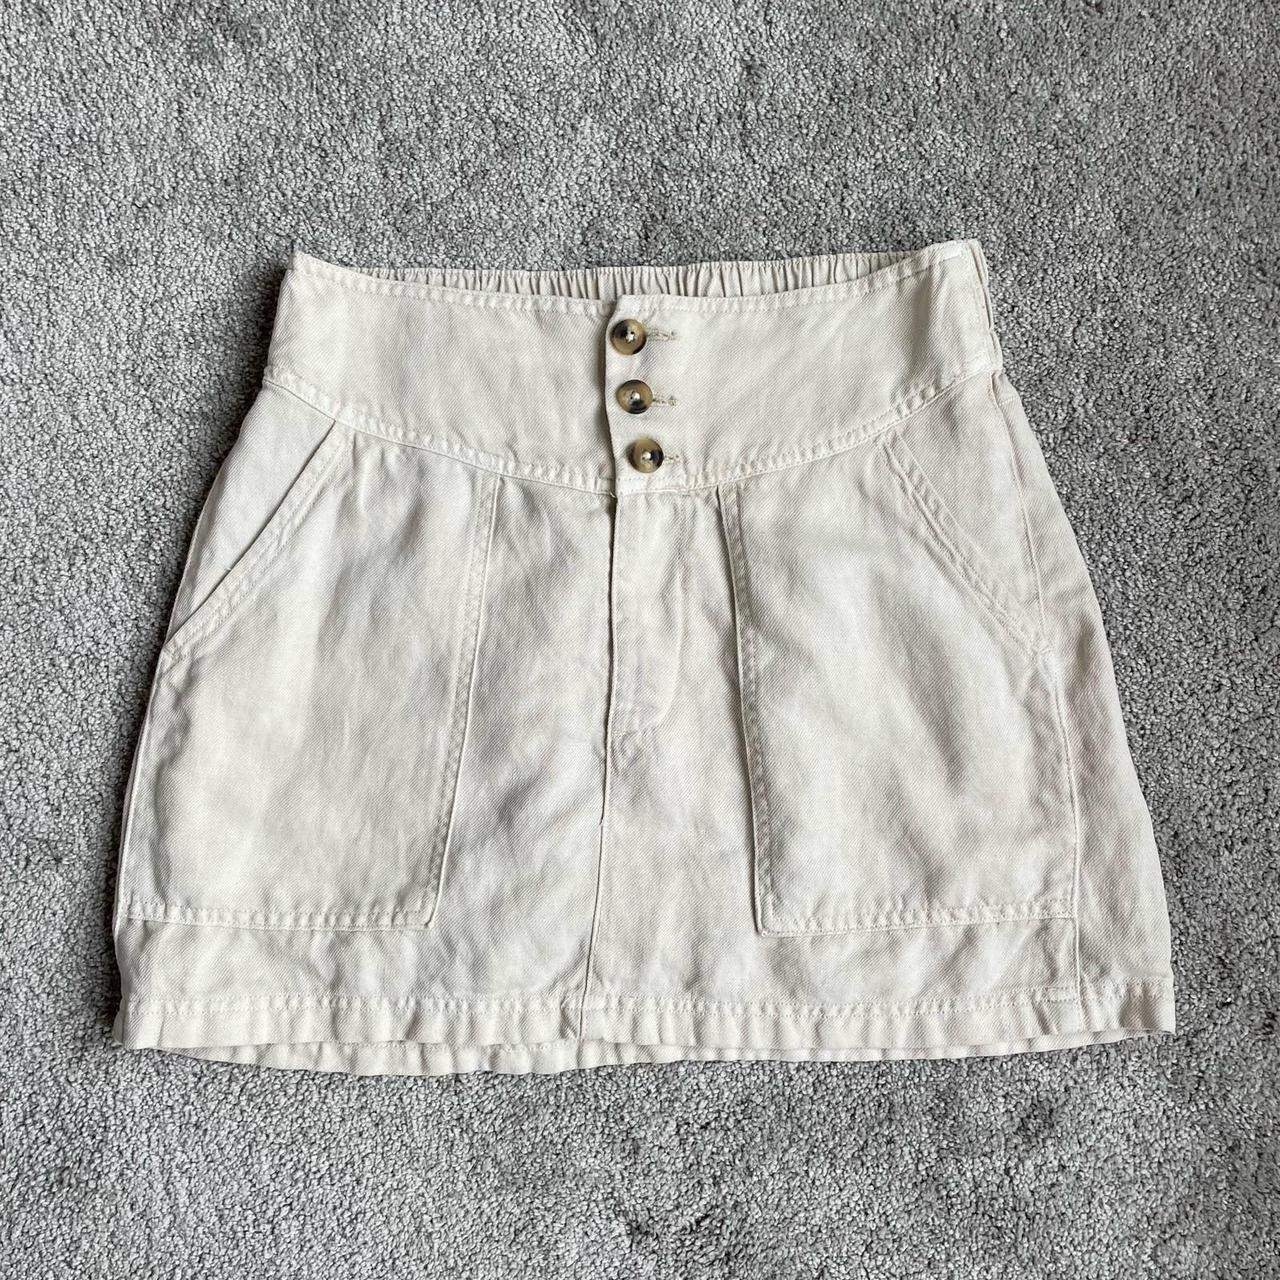 Aerie Women's Cream Skirt | Depop